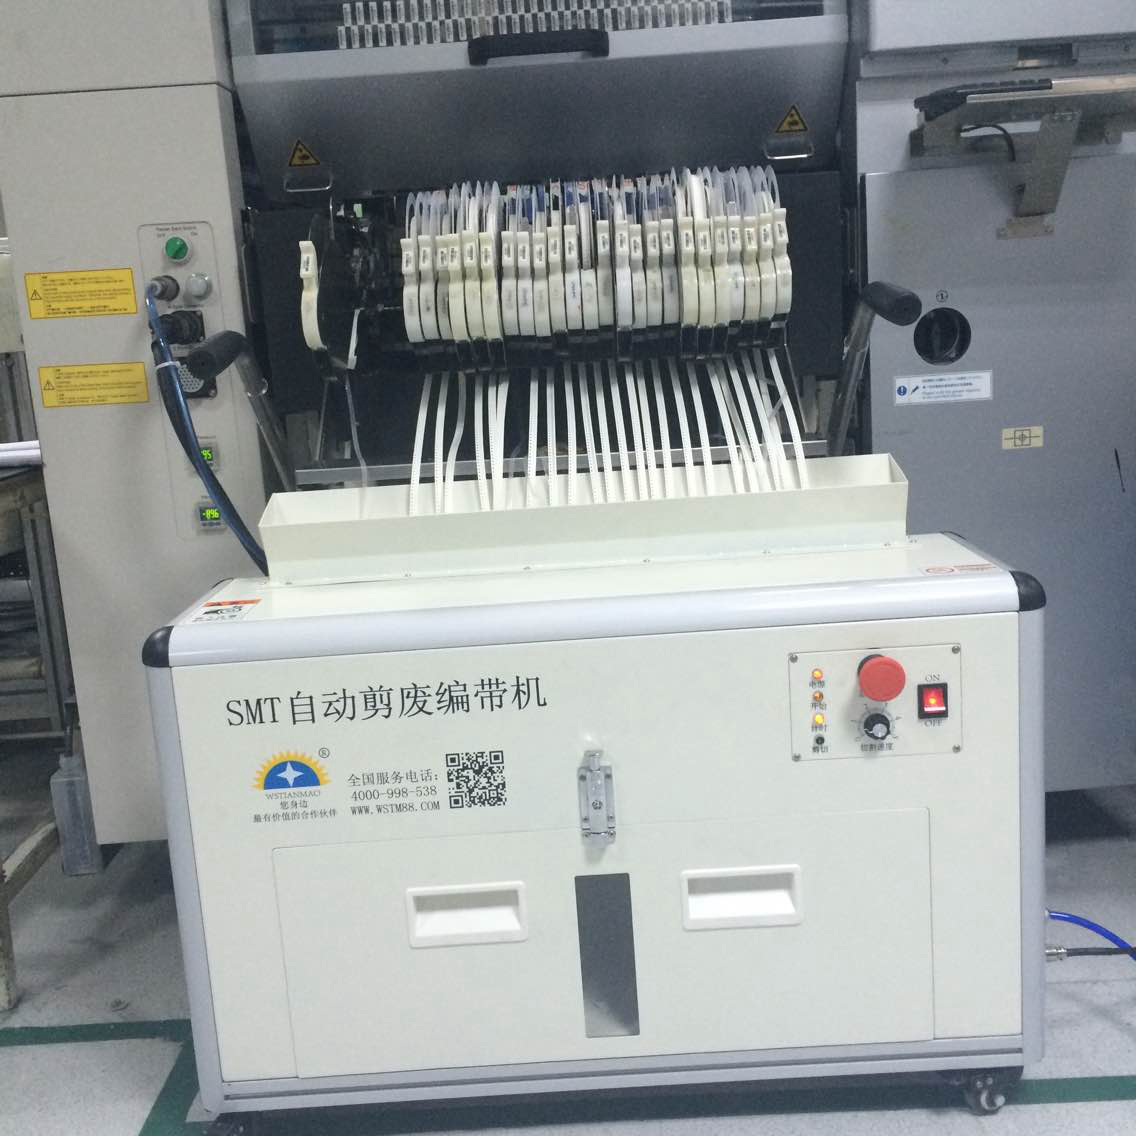 SMT Automatic cutting machine